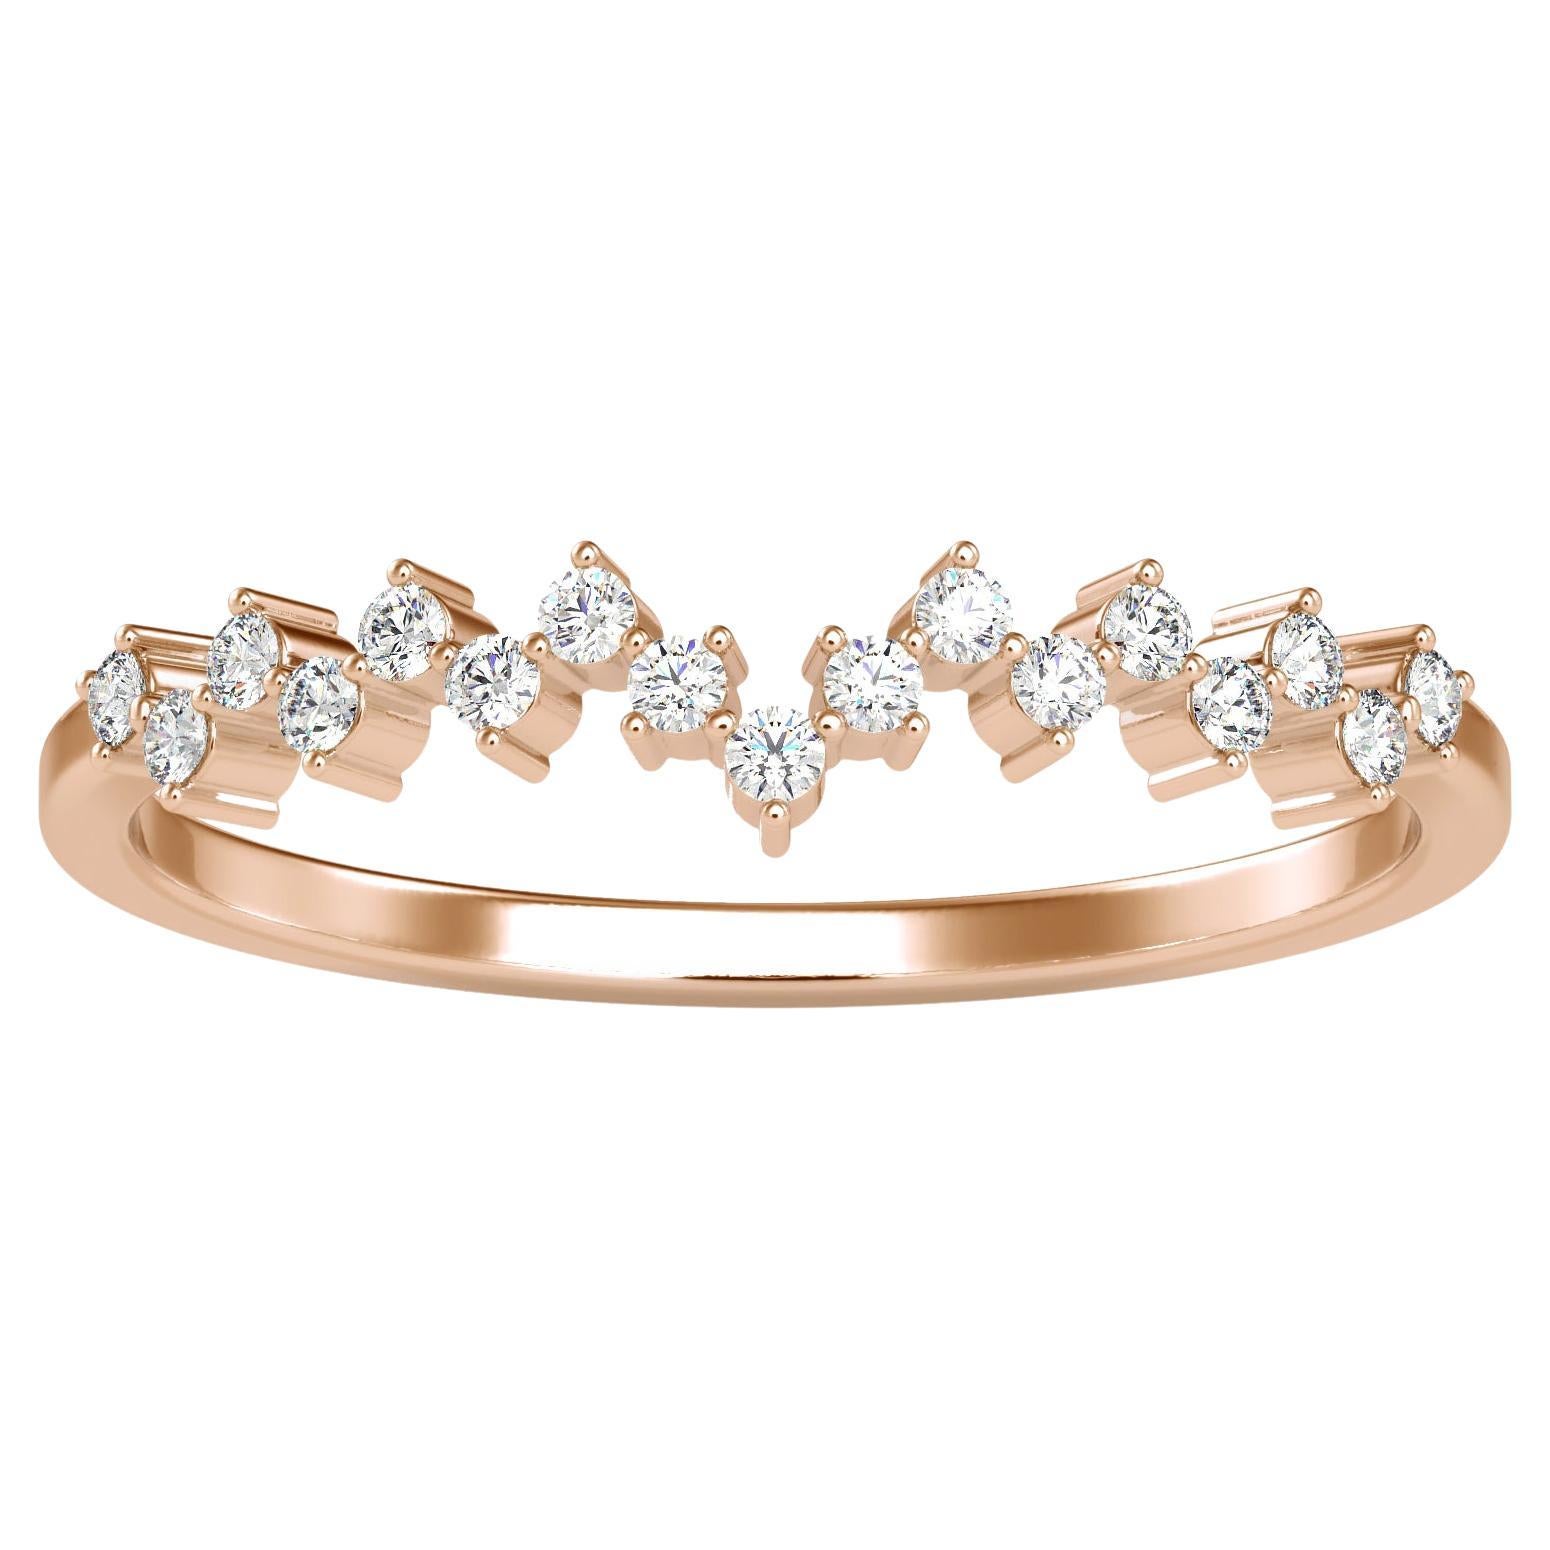 0.11 Carat Diamond 14K Rose Gold Ring